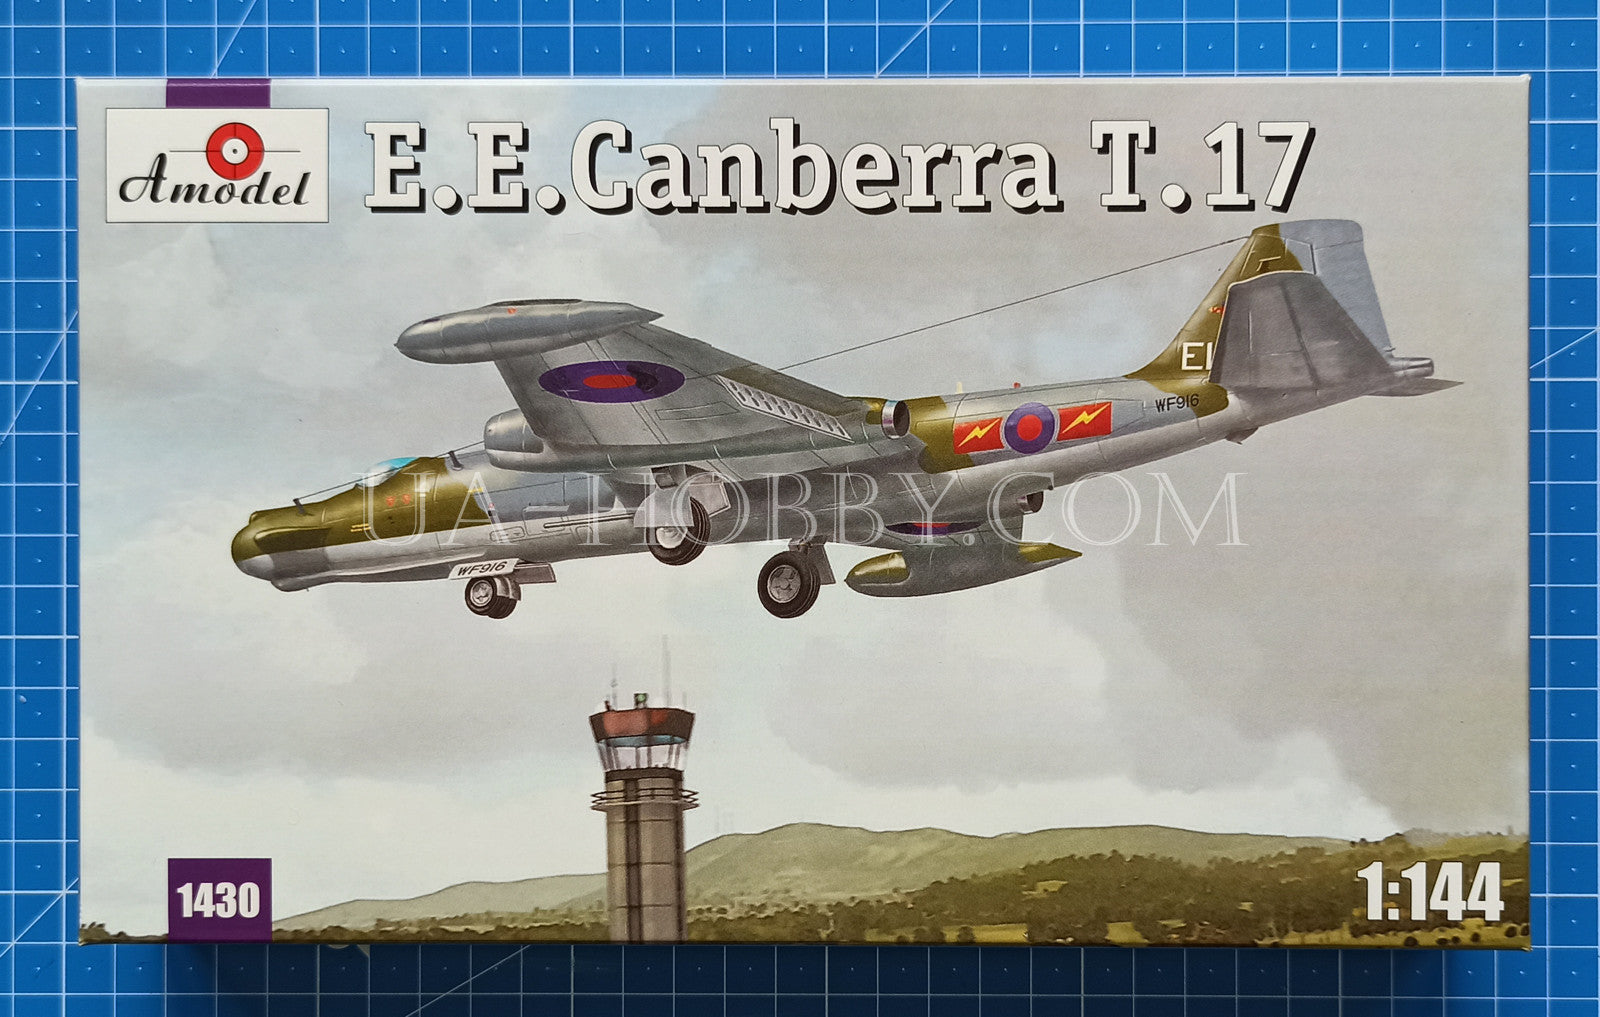 1/144 E.E. Canberra T.17. Amodel 1430